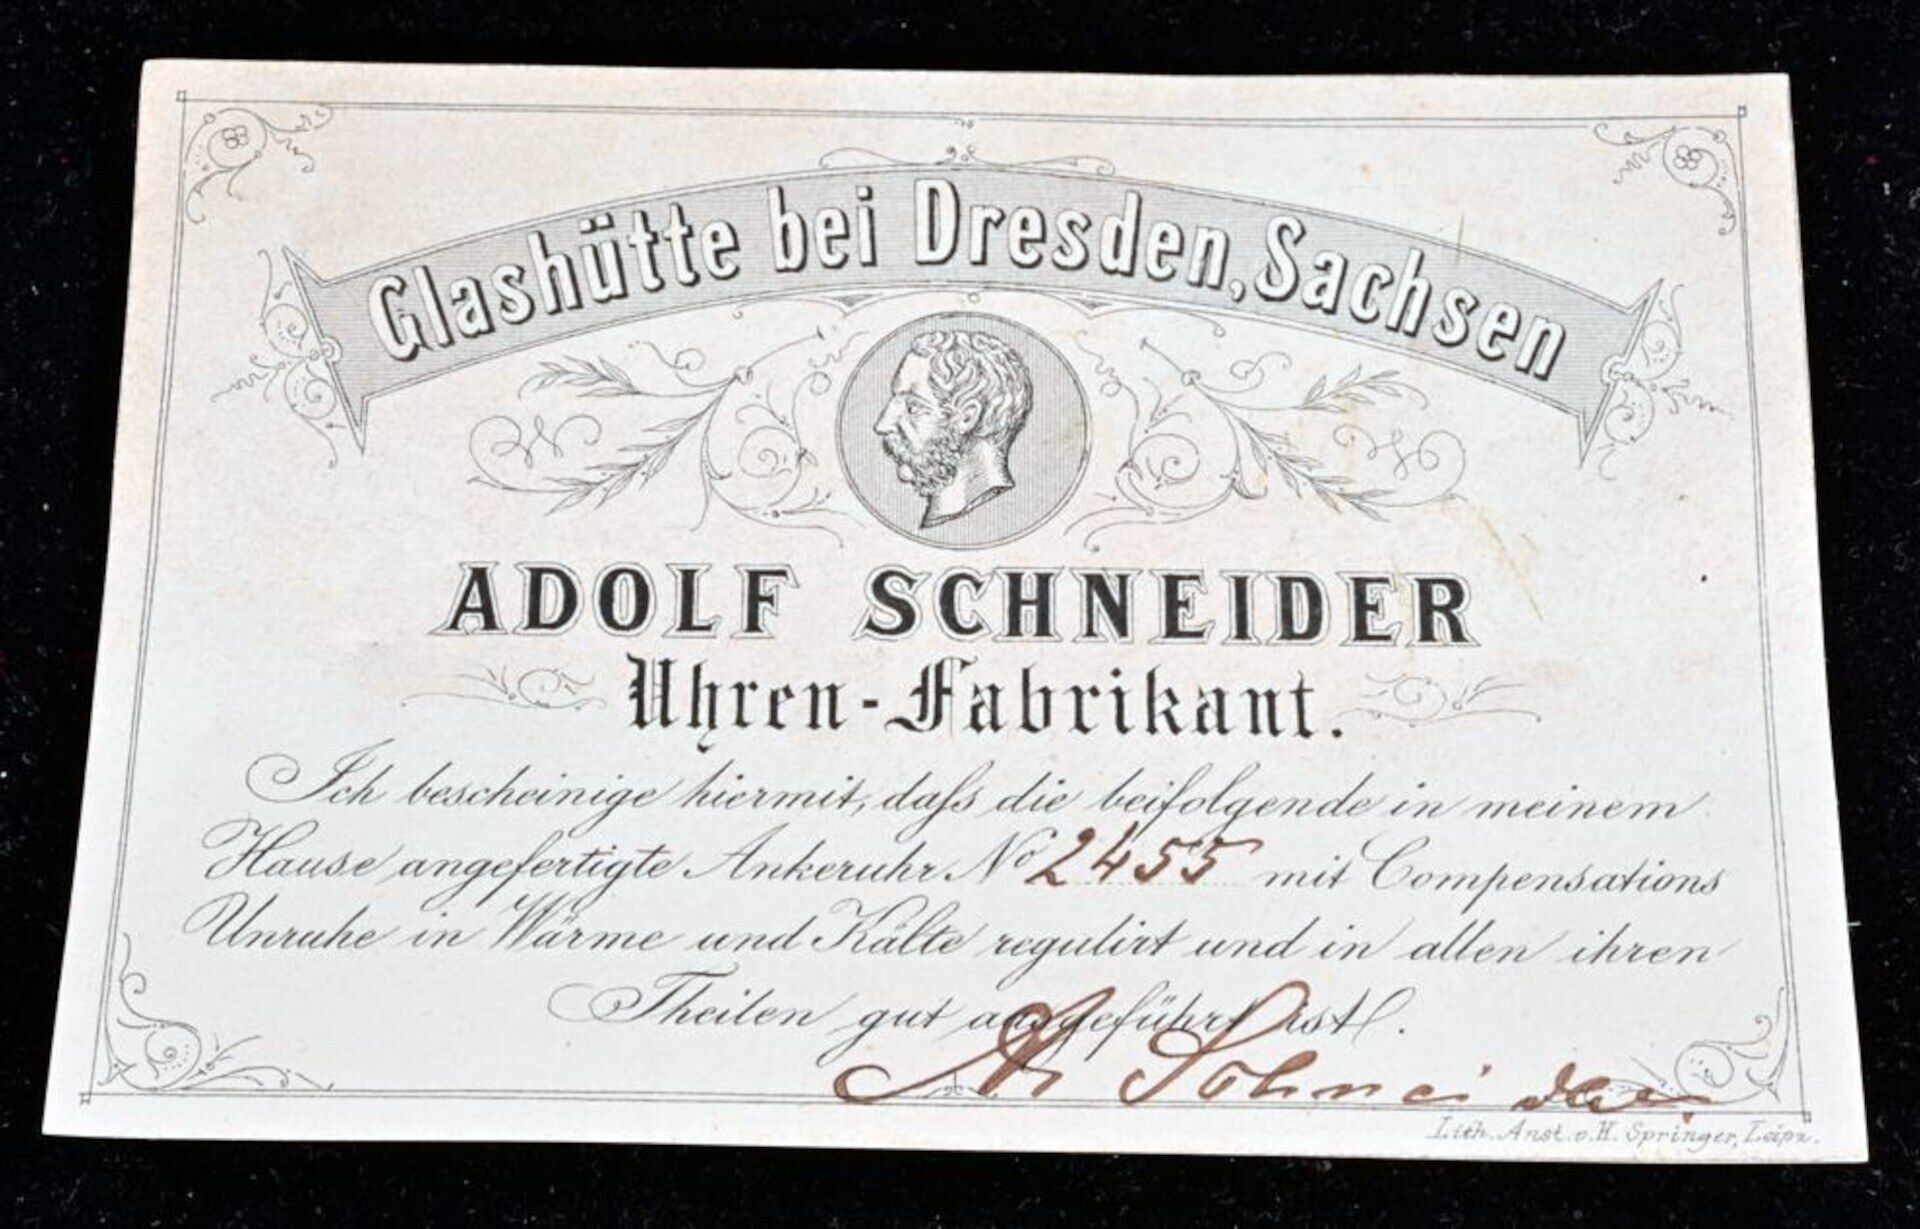 Seltene, offene Herrentaschenuhr von "A.SCHNEIDER GLASHÜTTE" der 1870er Jahre, in originaler Schatu - Image 4 of 17